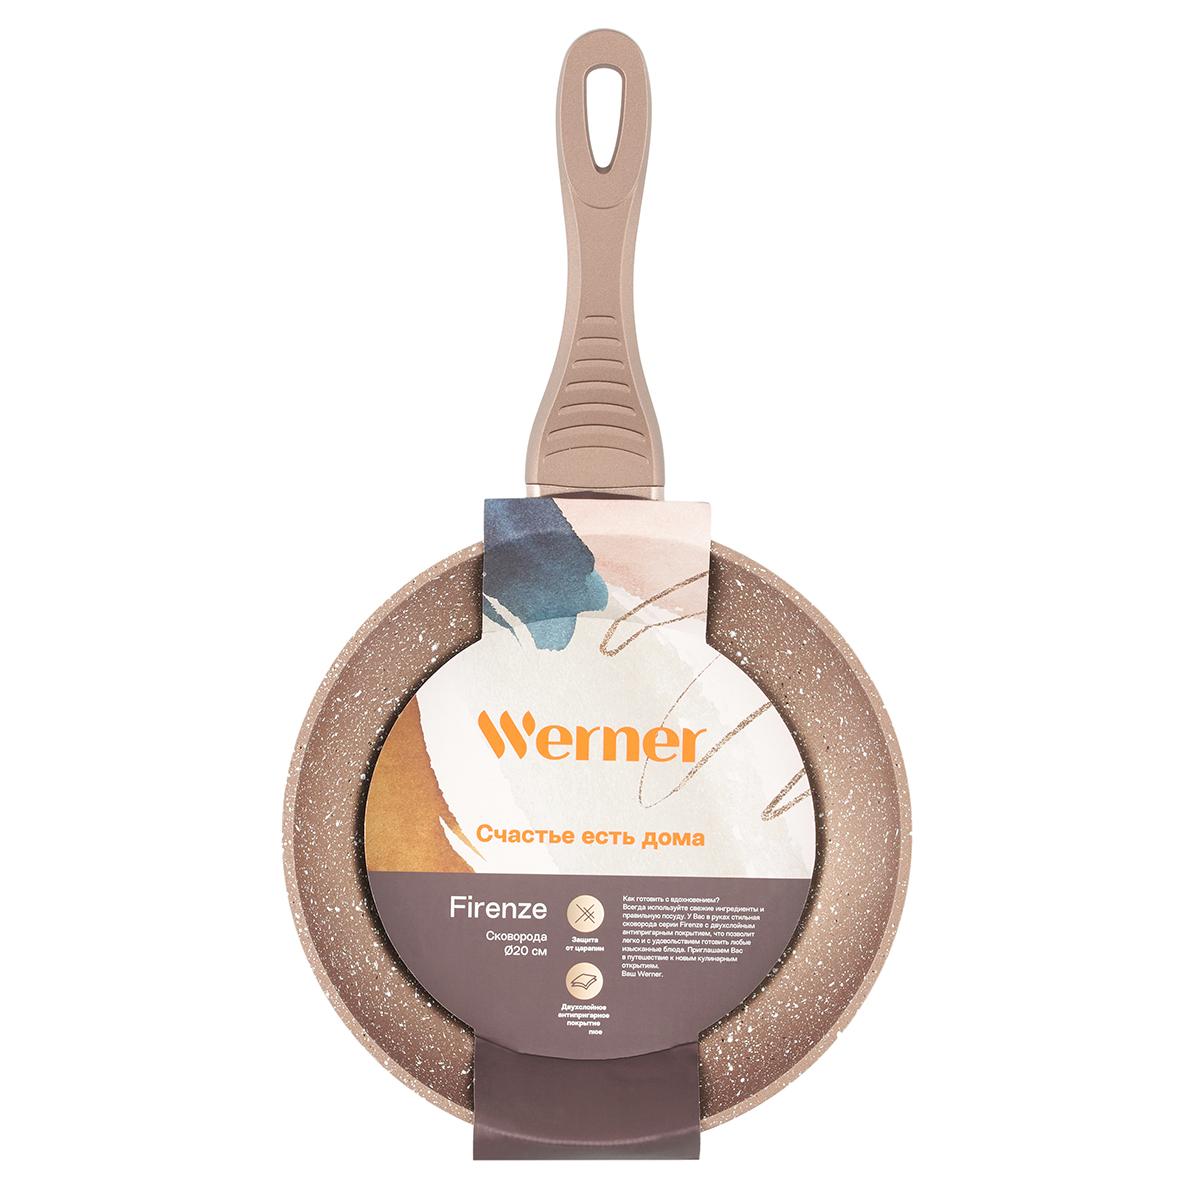 Сковорода Werner Firenze 20 см, цвет коричневый - фото 8